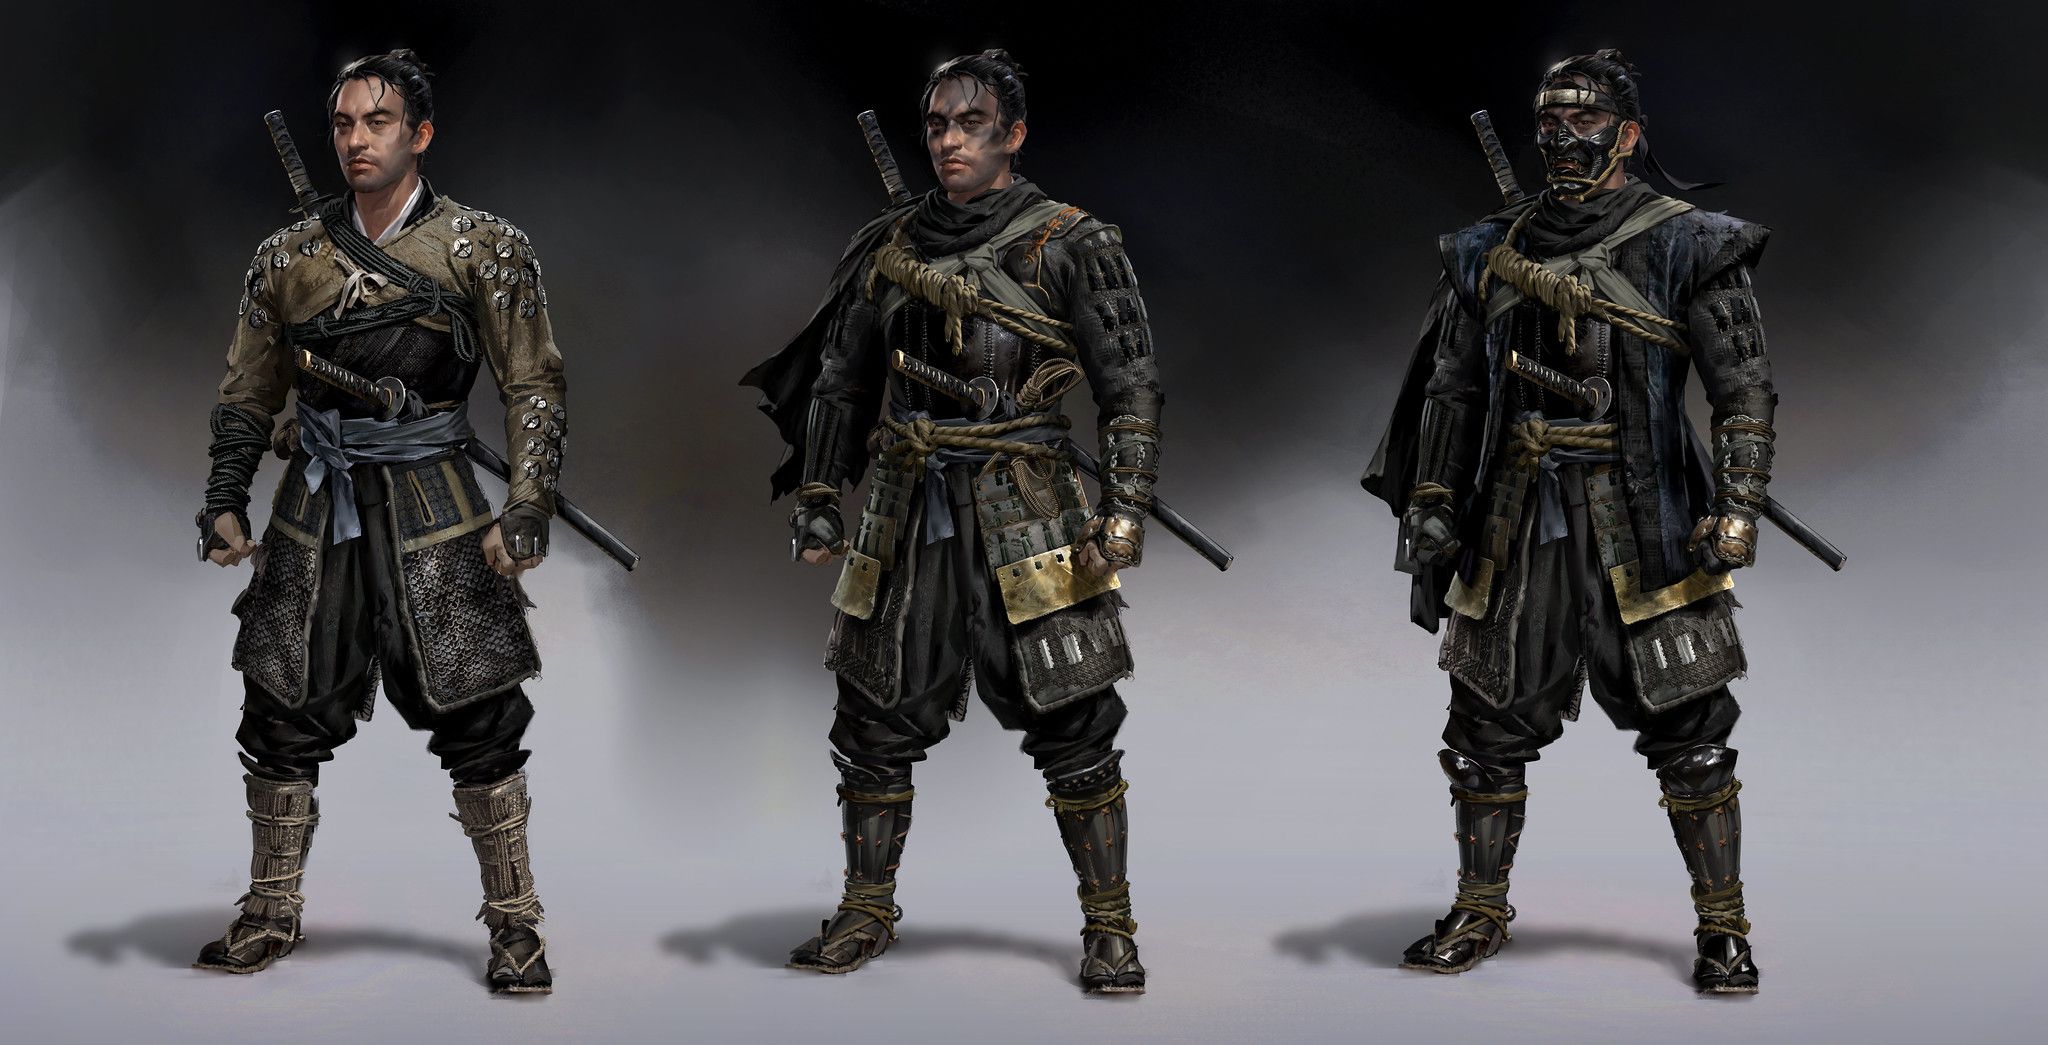 jin armor concept